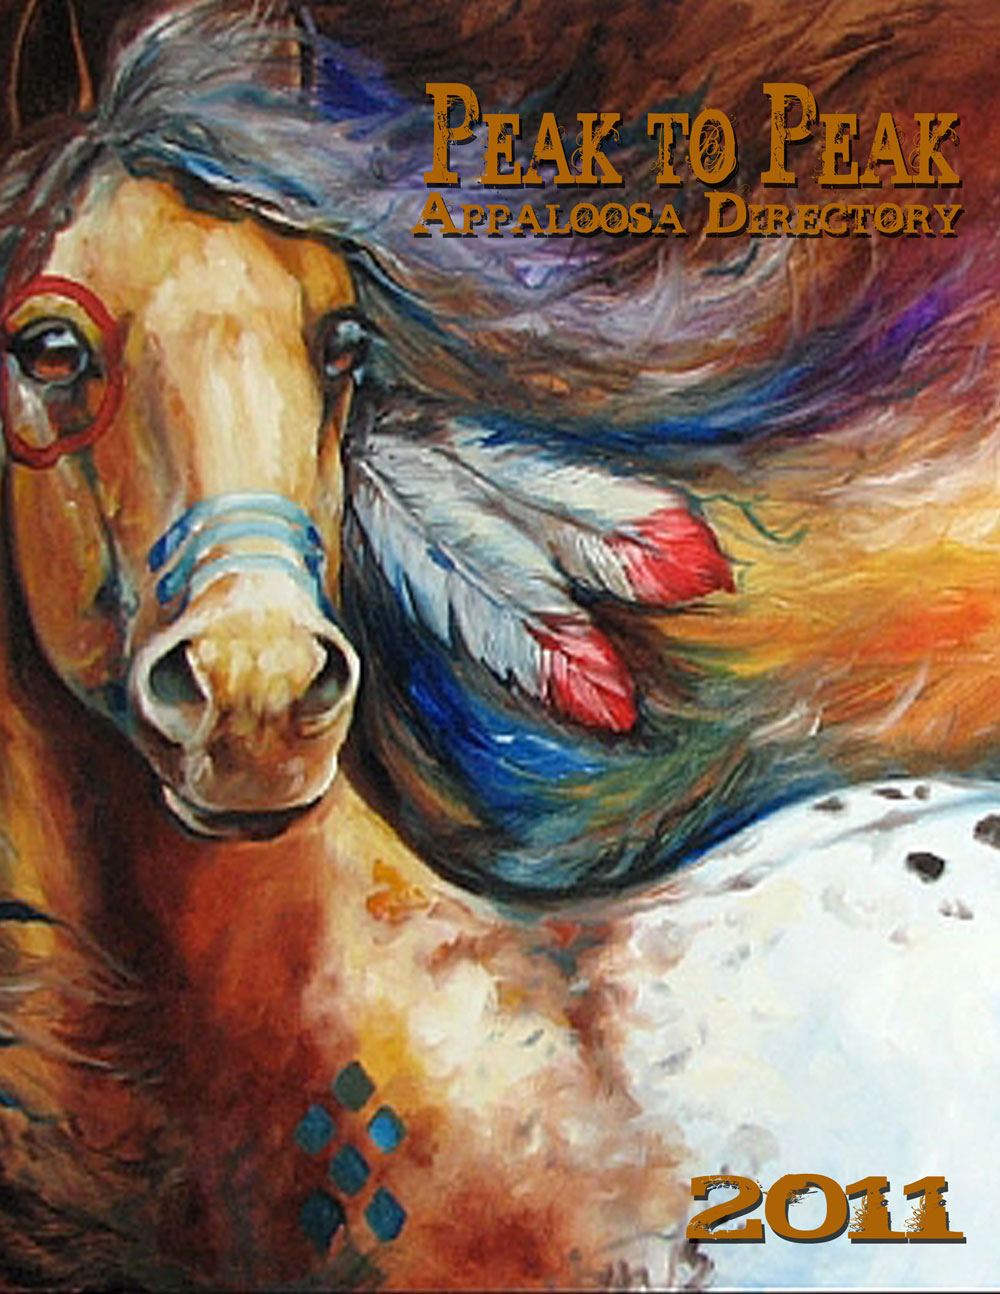 Обложка лошади. Marcia Baldwin картины лошади. Марсия Болдуин картины. Синяя лошадь картина.